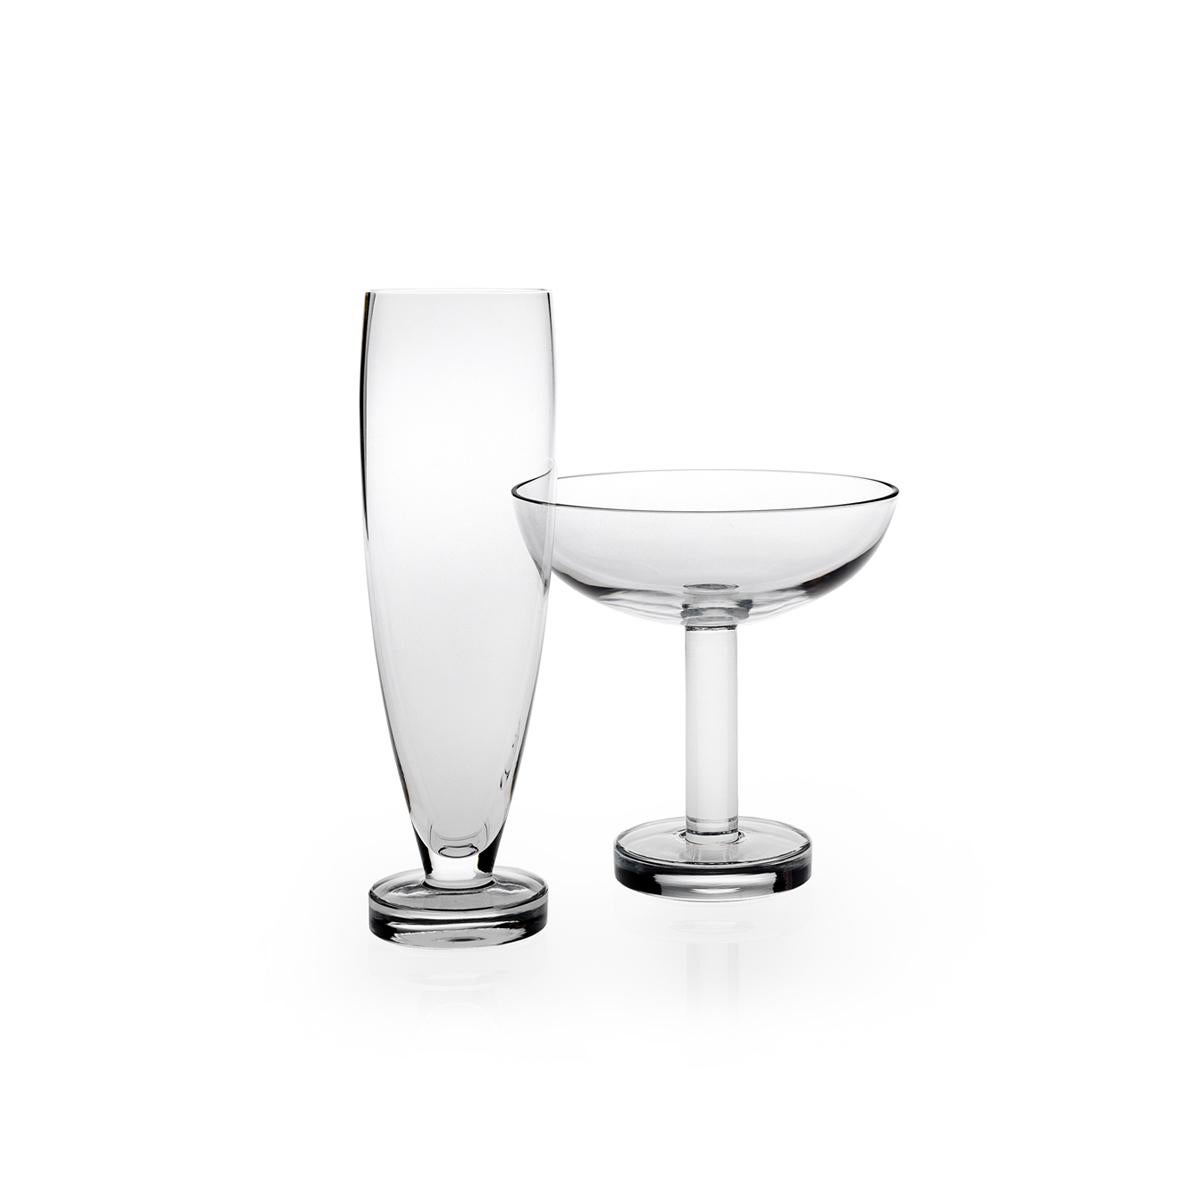 Champagnerflöte aus mundgeblasenem Glas. Die Tulip-Kollektion ist eine Glaswarenfamilie von Aldo Cibic, der diese Stücke auf der Grenze zwischen klassischem und postmodernem Design entworfen hat. Die kühn-schlichten geometrischen Formen sind